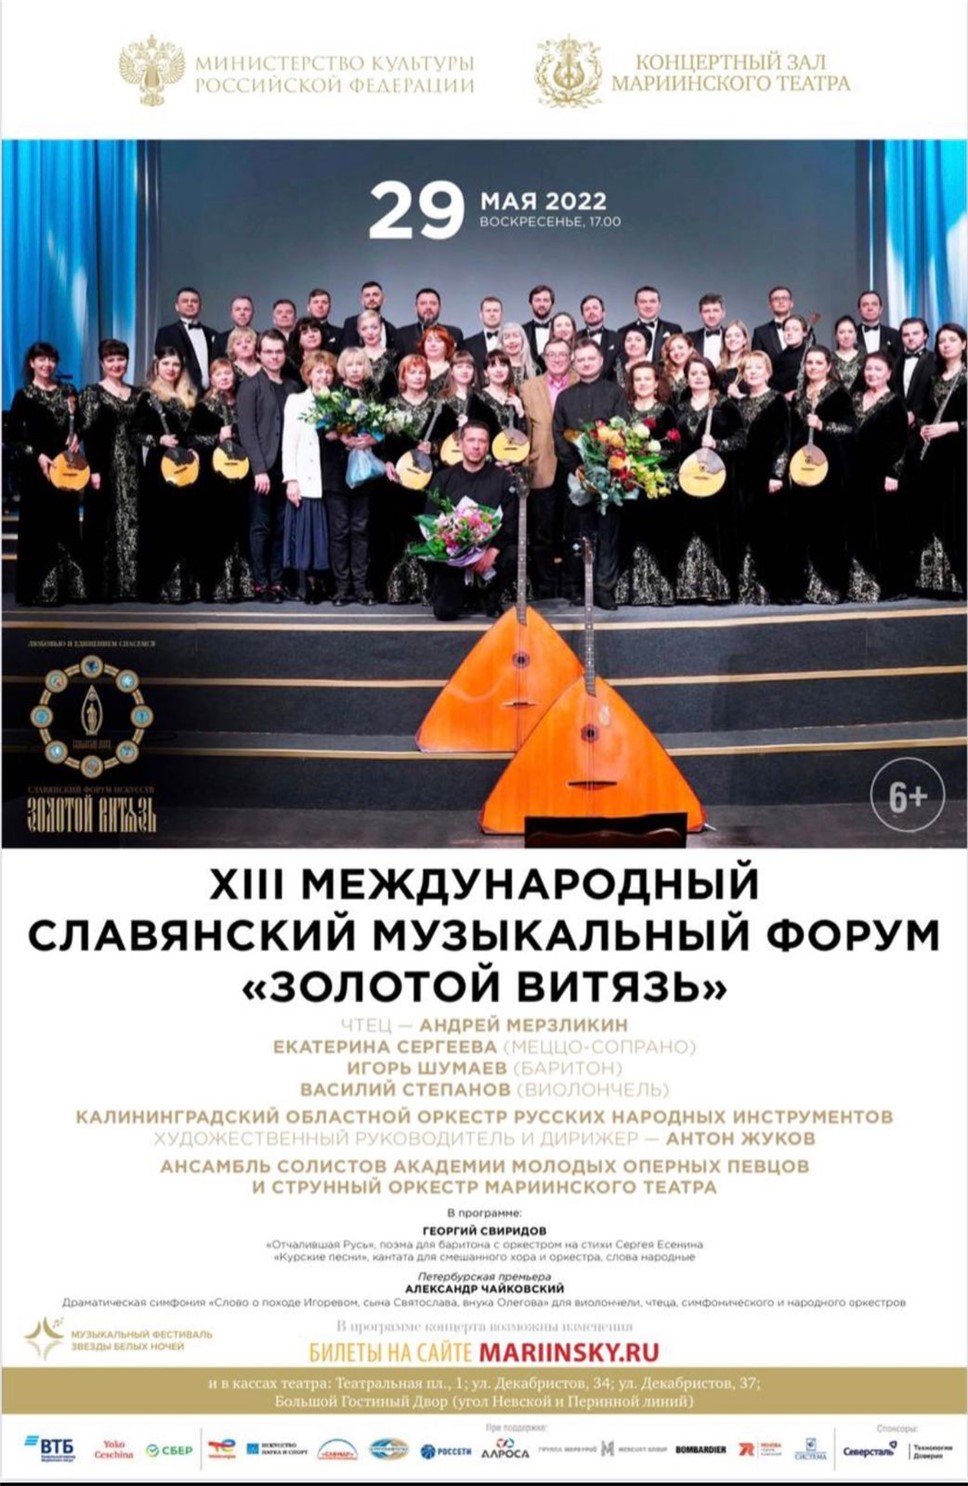 В Санкт-Петербурге в Мариинском театре состоится концерт в рамках форума 